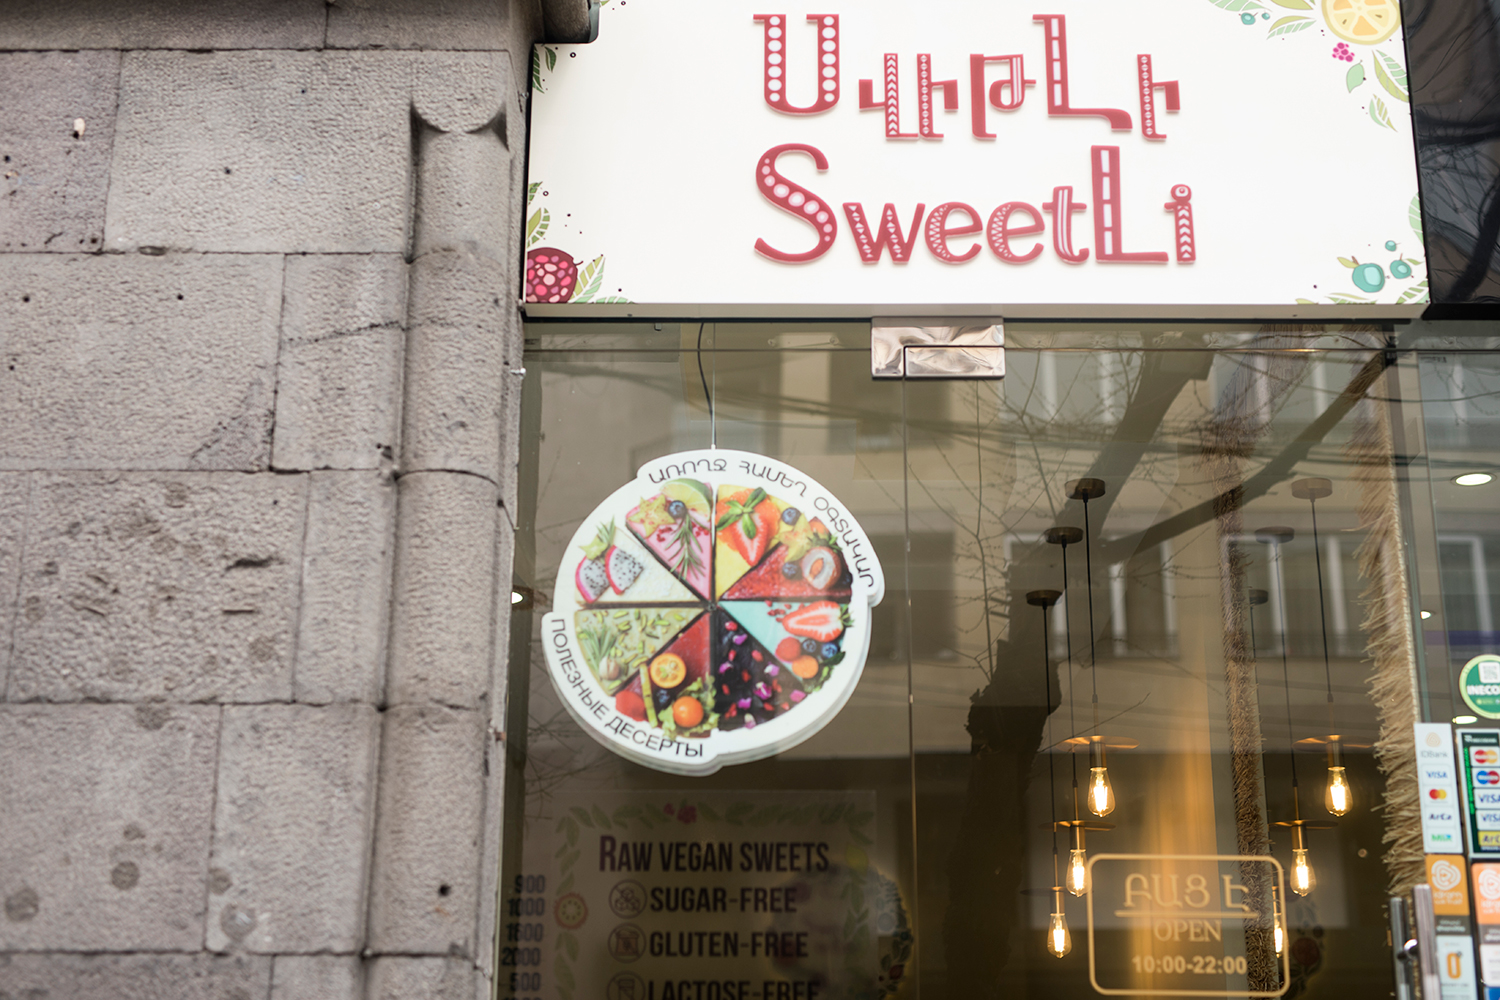 SweetLi by Lilit-ի չթխվող տորթերն ու առանց շաքարավազի քաղցրավենիքը